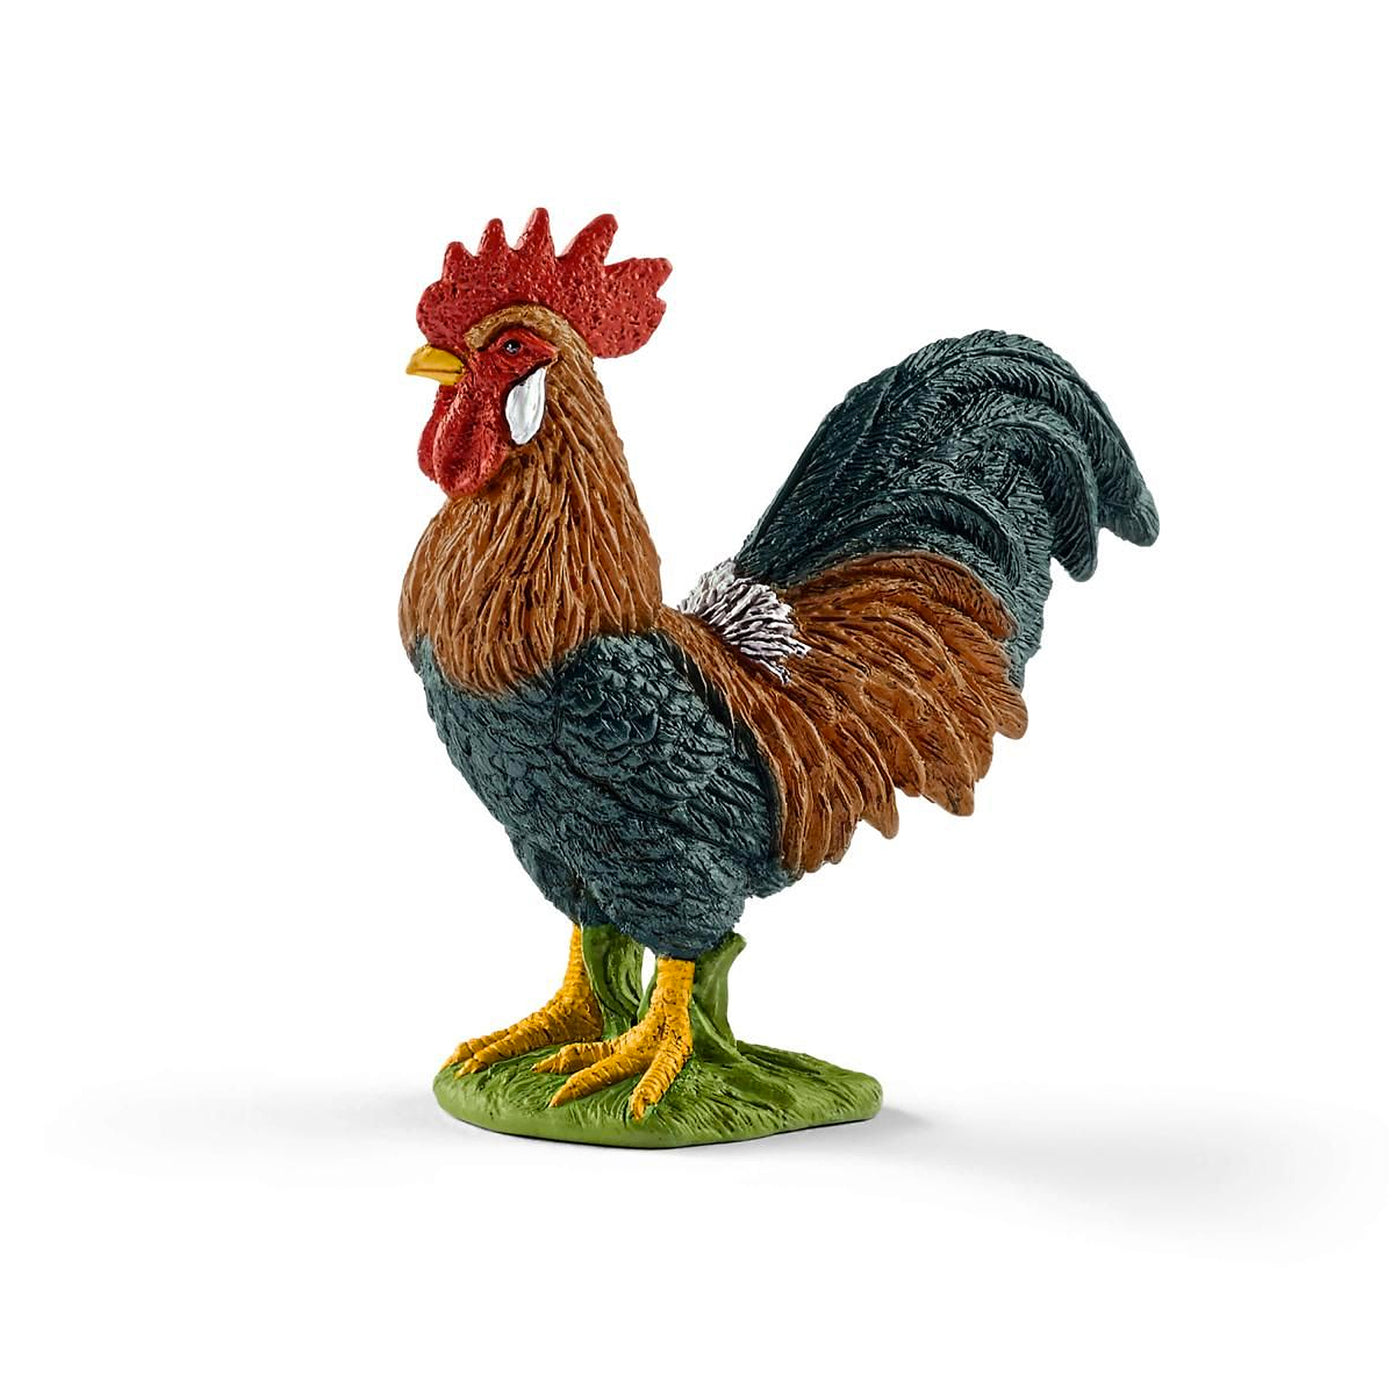 Schleich Farm World Rooster Toy Figurine